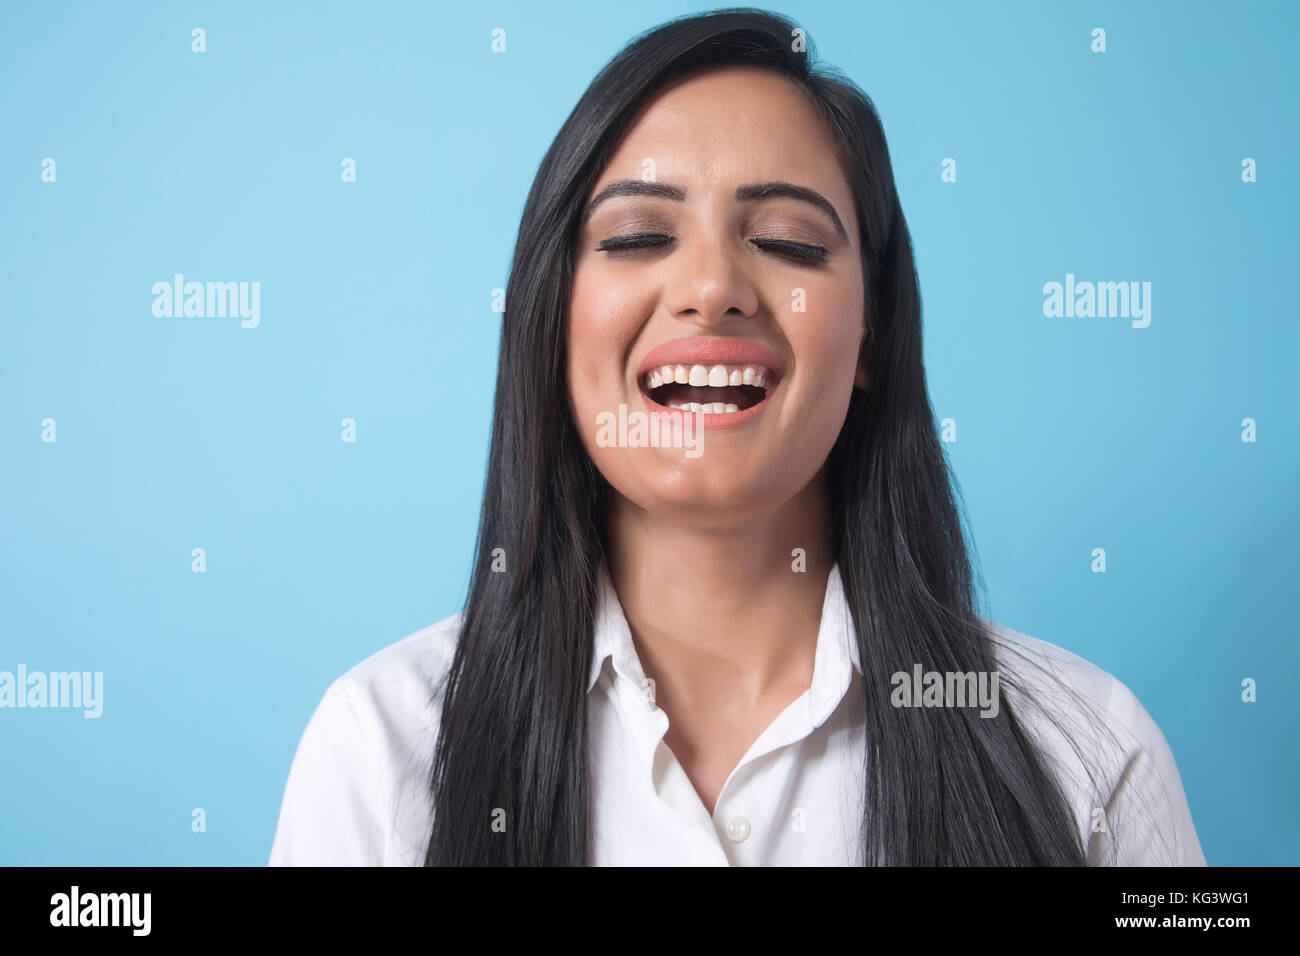 Portrait of smiling businesswoman sur fond bleu Banque D'Images